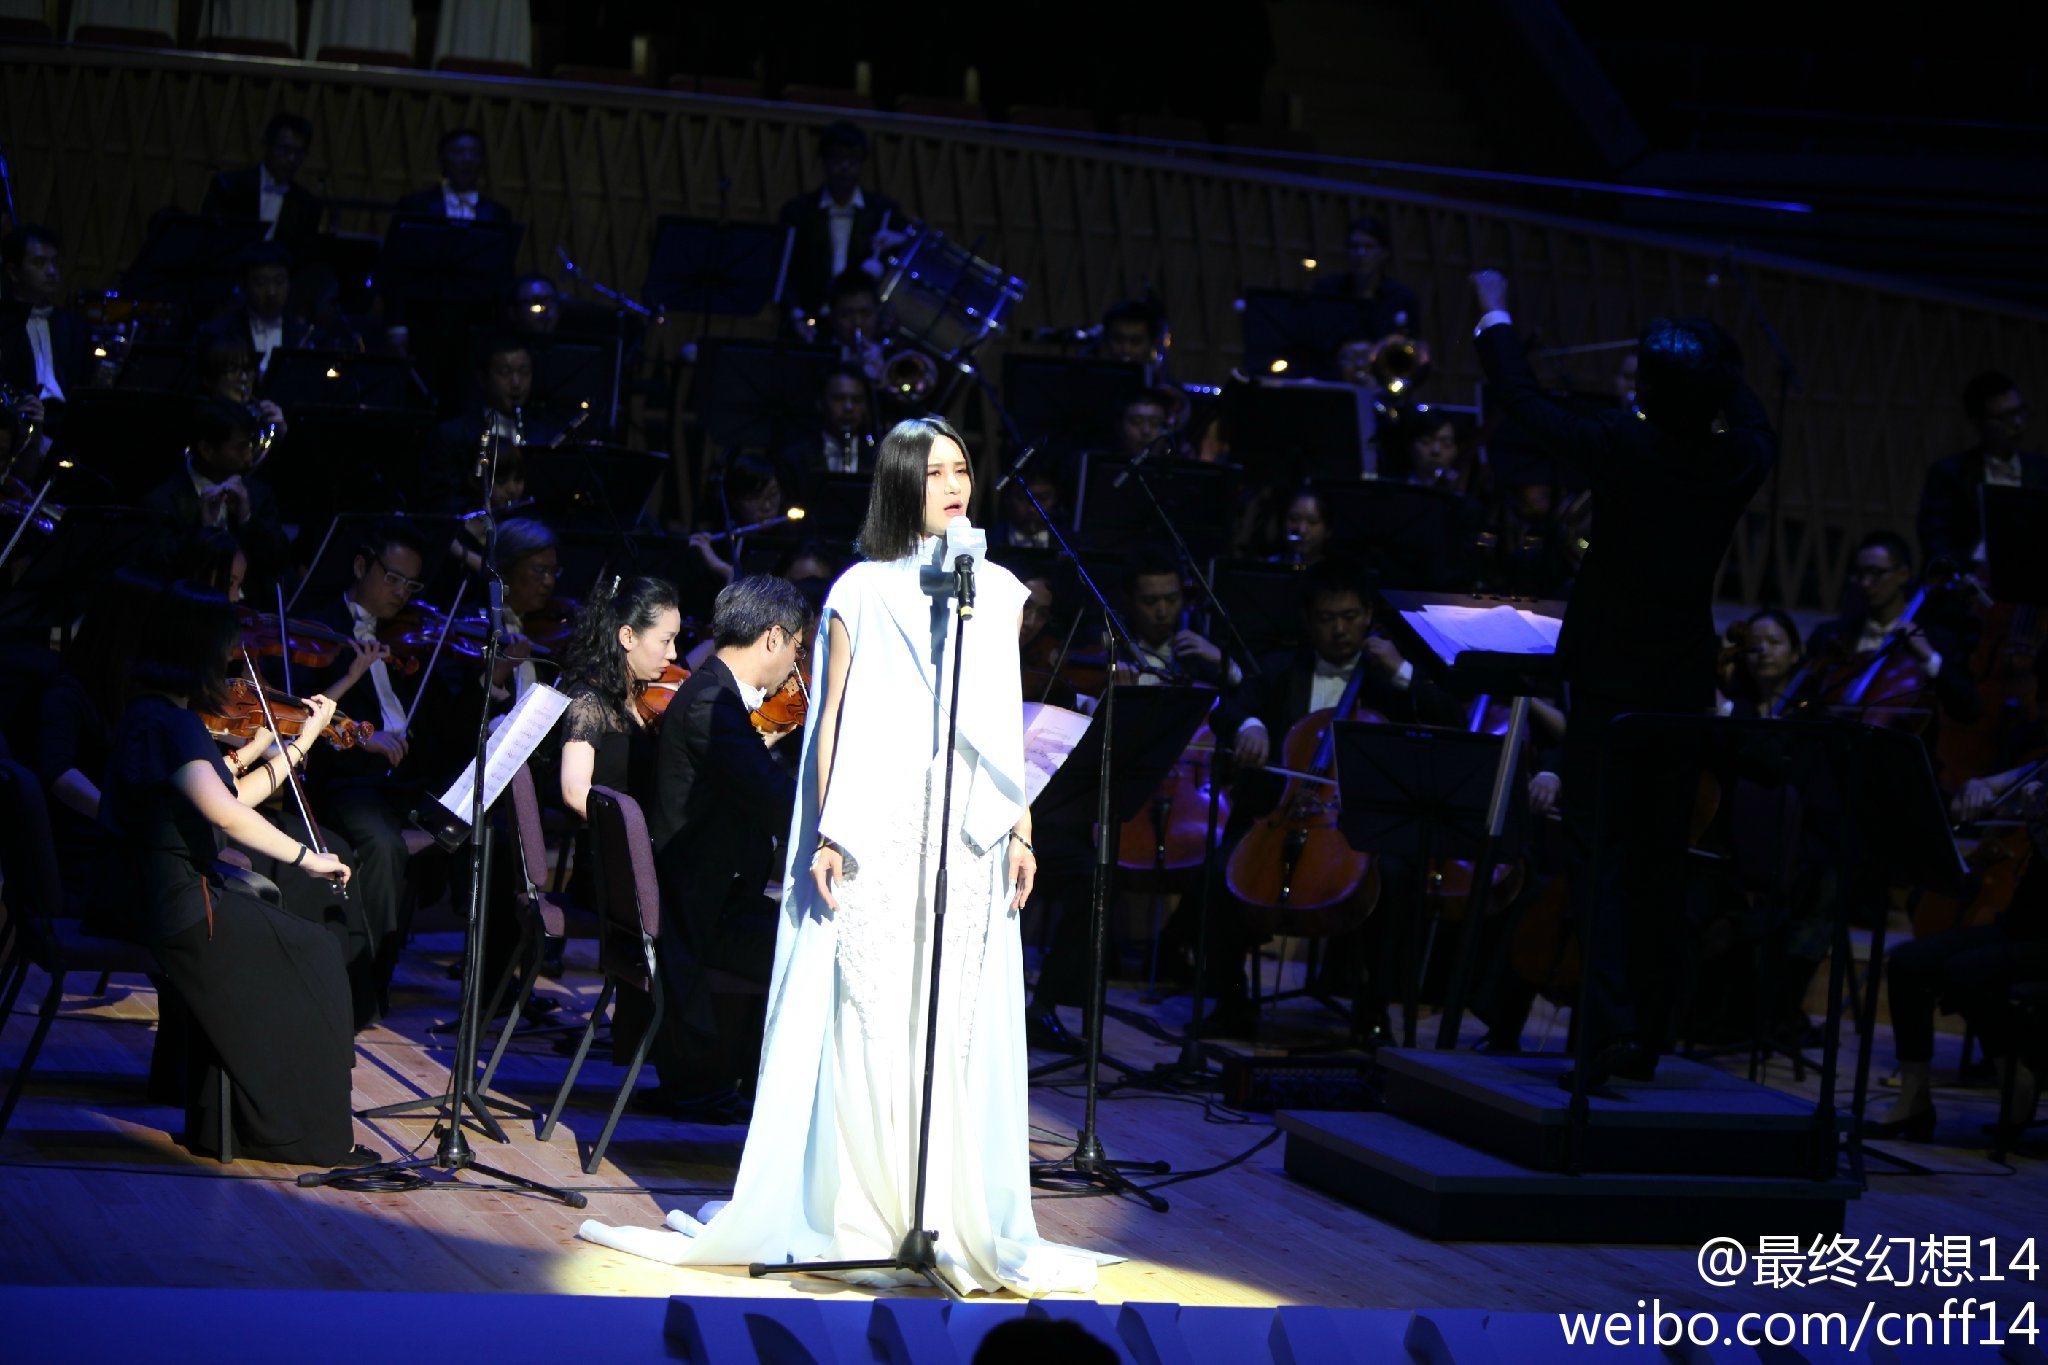 《太空戰士14》交響音樂會通過許可 將於3月在上海舉行